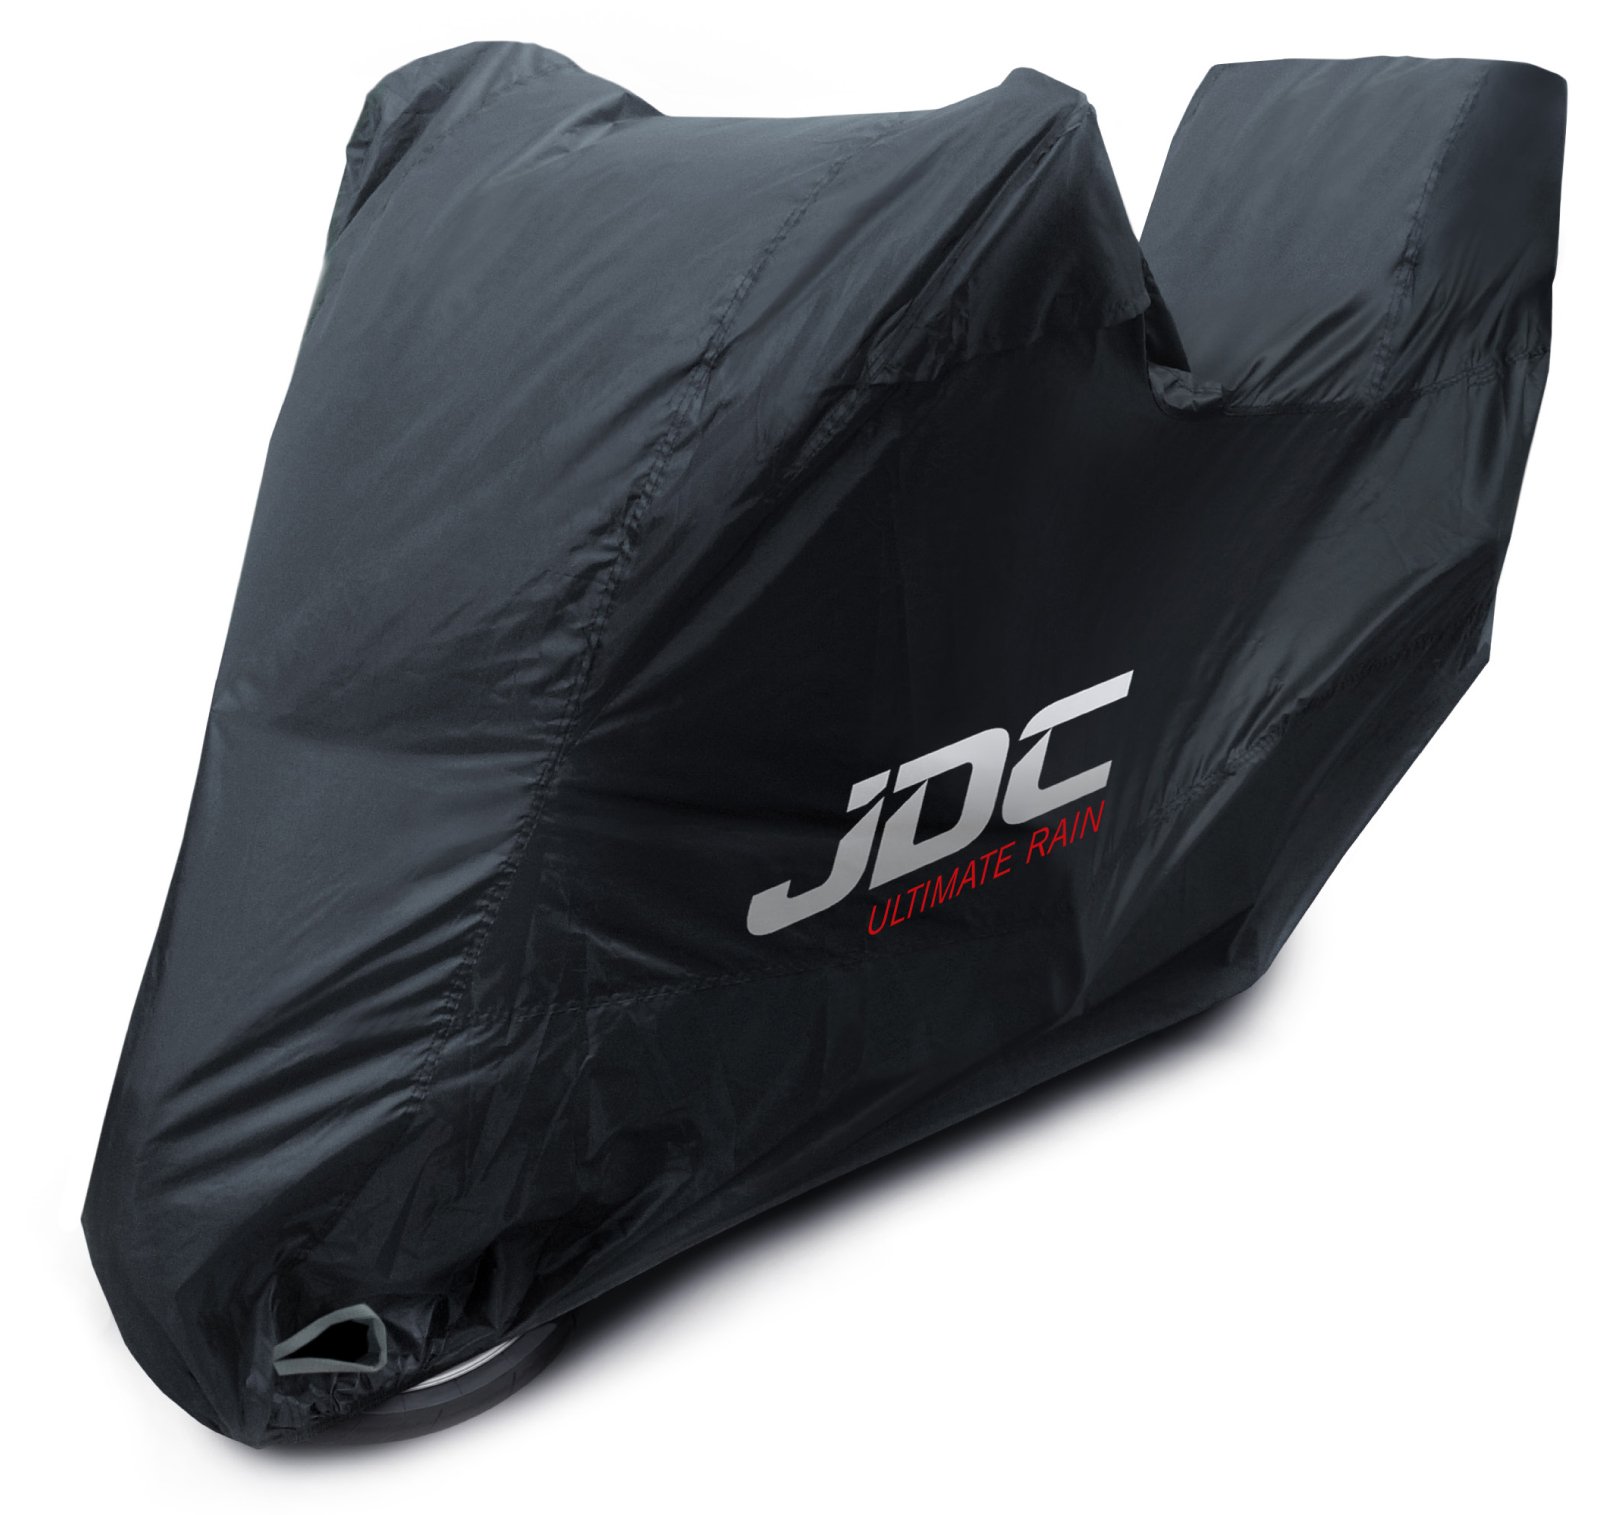 JDC 100% wasserdichte Motorradabdeckung – Ultimate RAIN (Strapazierfähig, weiches Futter, hitzebeständig, verschweißte Nähte) - L Top-Box